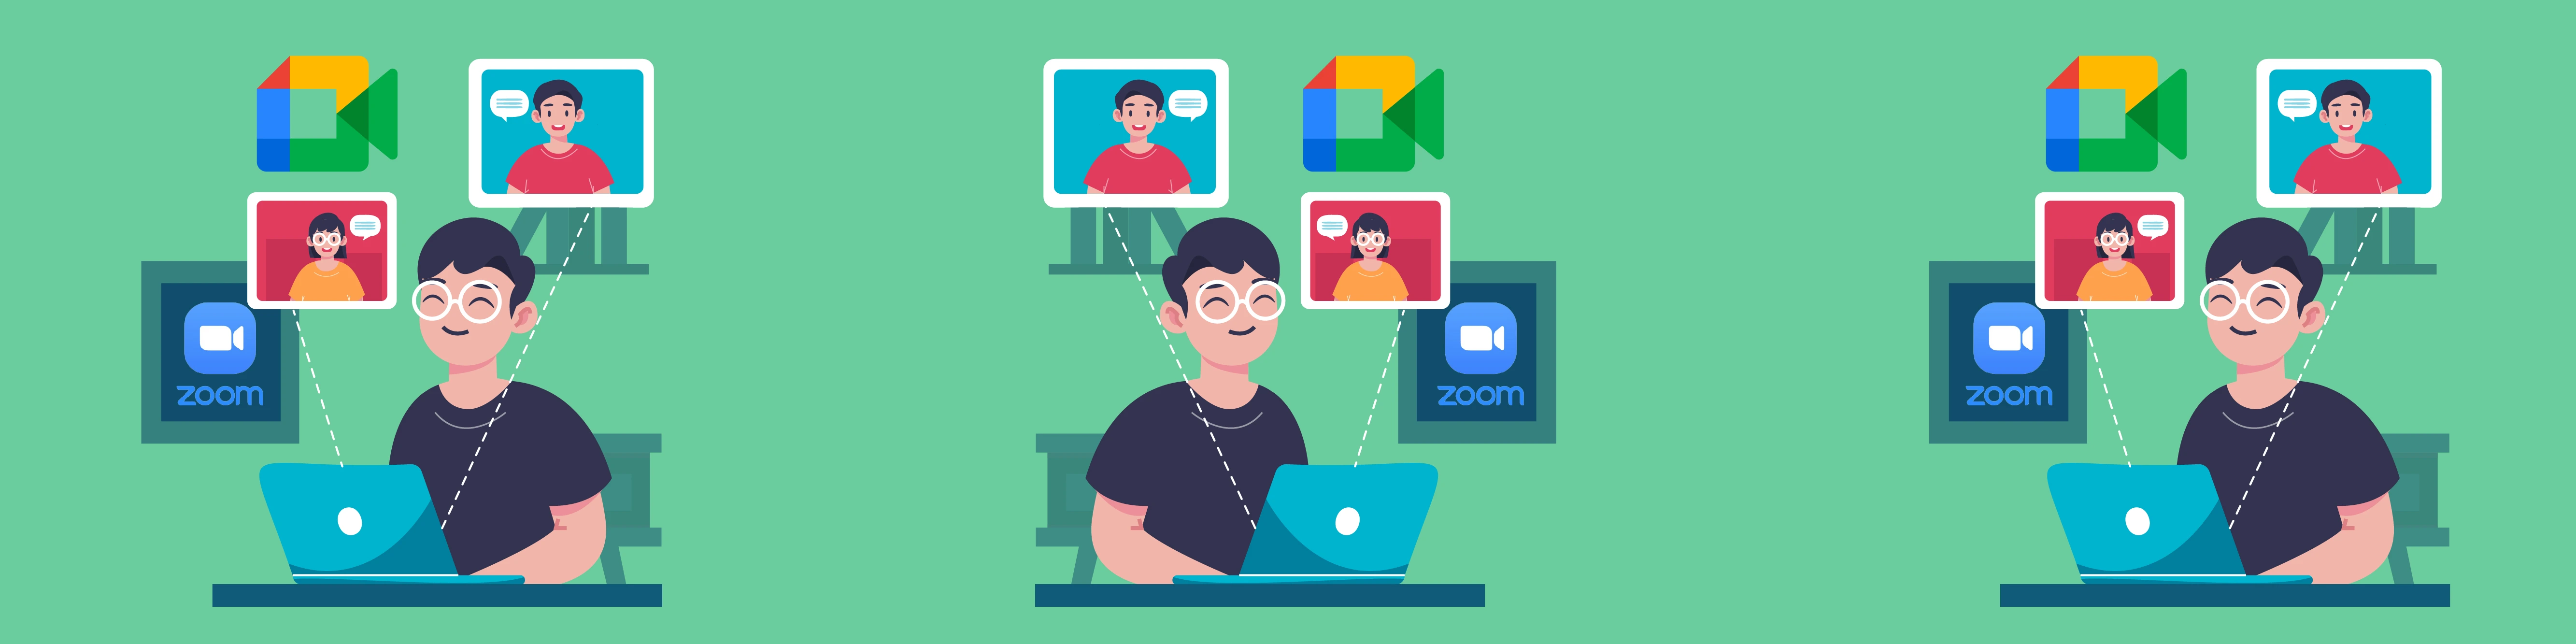 Jasa Tambah Viewer Webinar (Google Meet, Zoom, Dll)